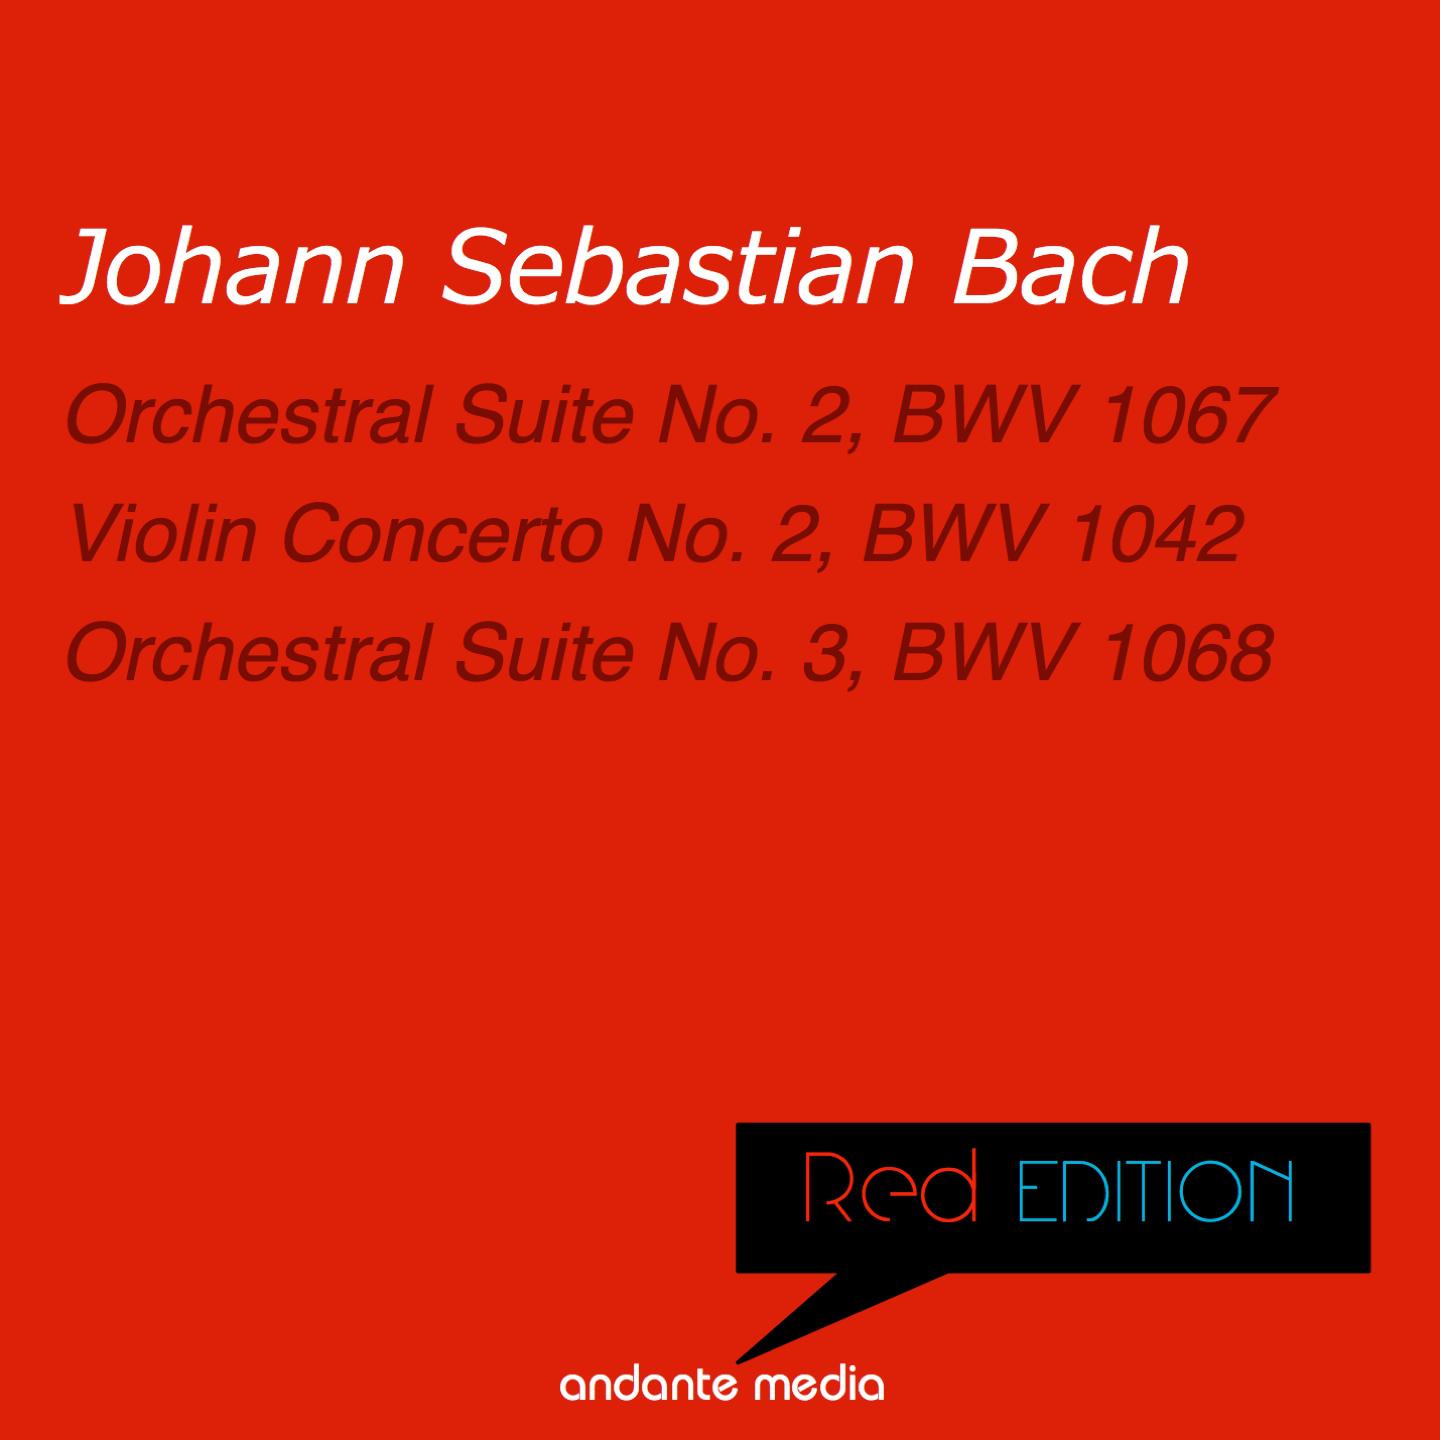 Red Edition - Bach: Orchestral Suites Nos. 2, 3 & Violin Concerto No. 2, BWV 1042